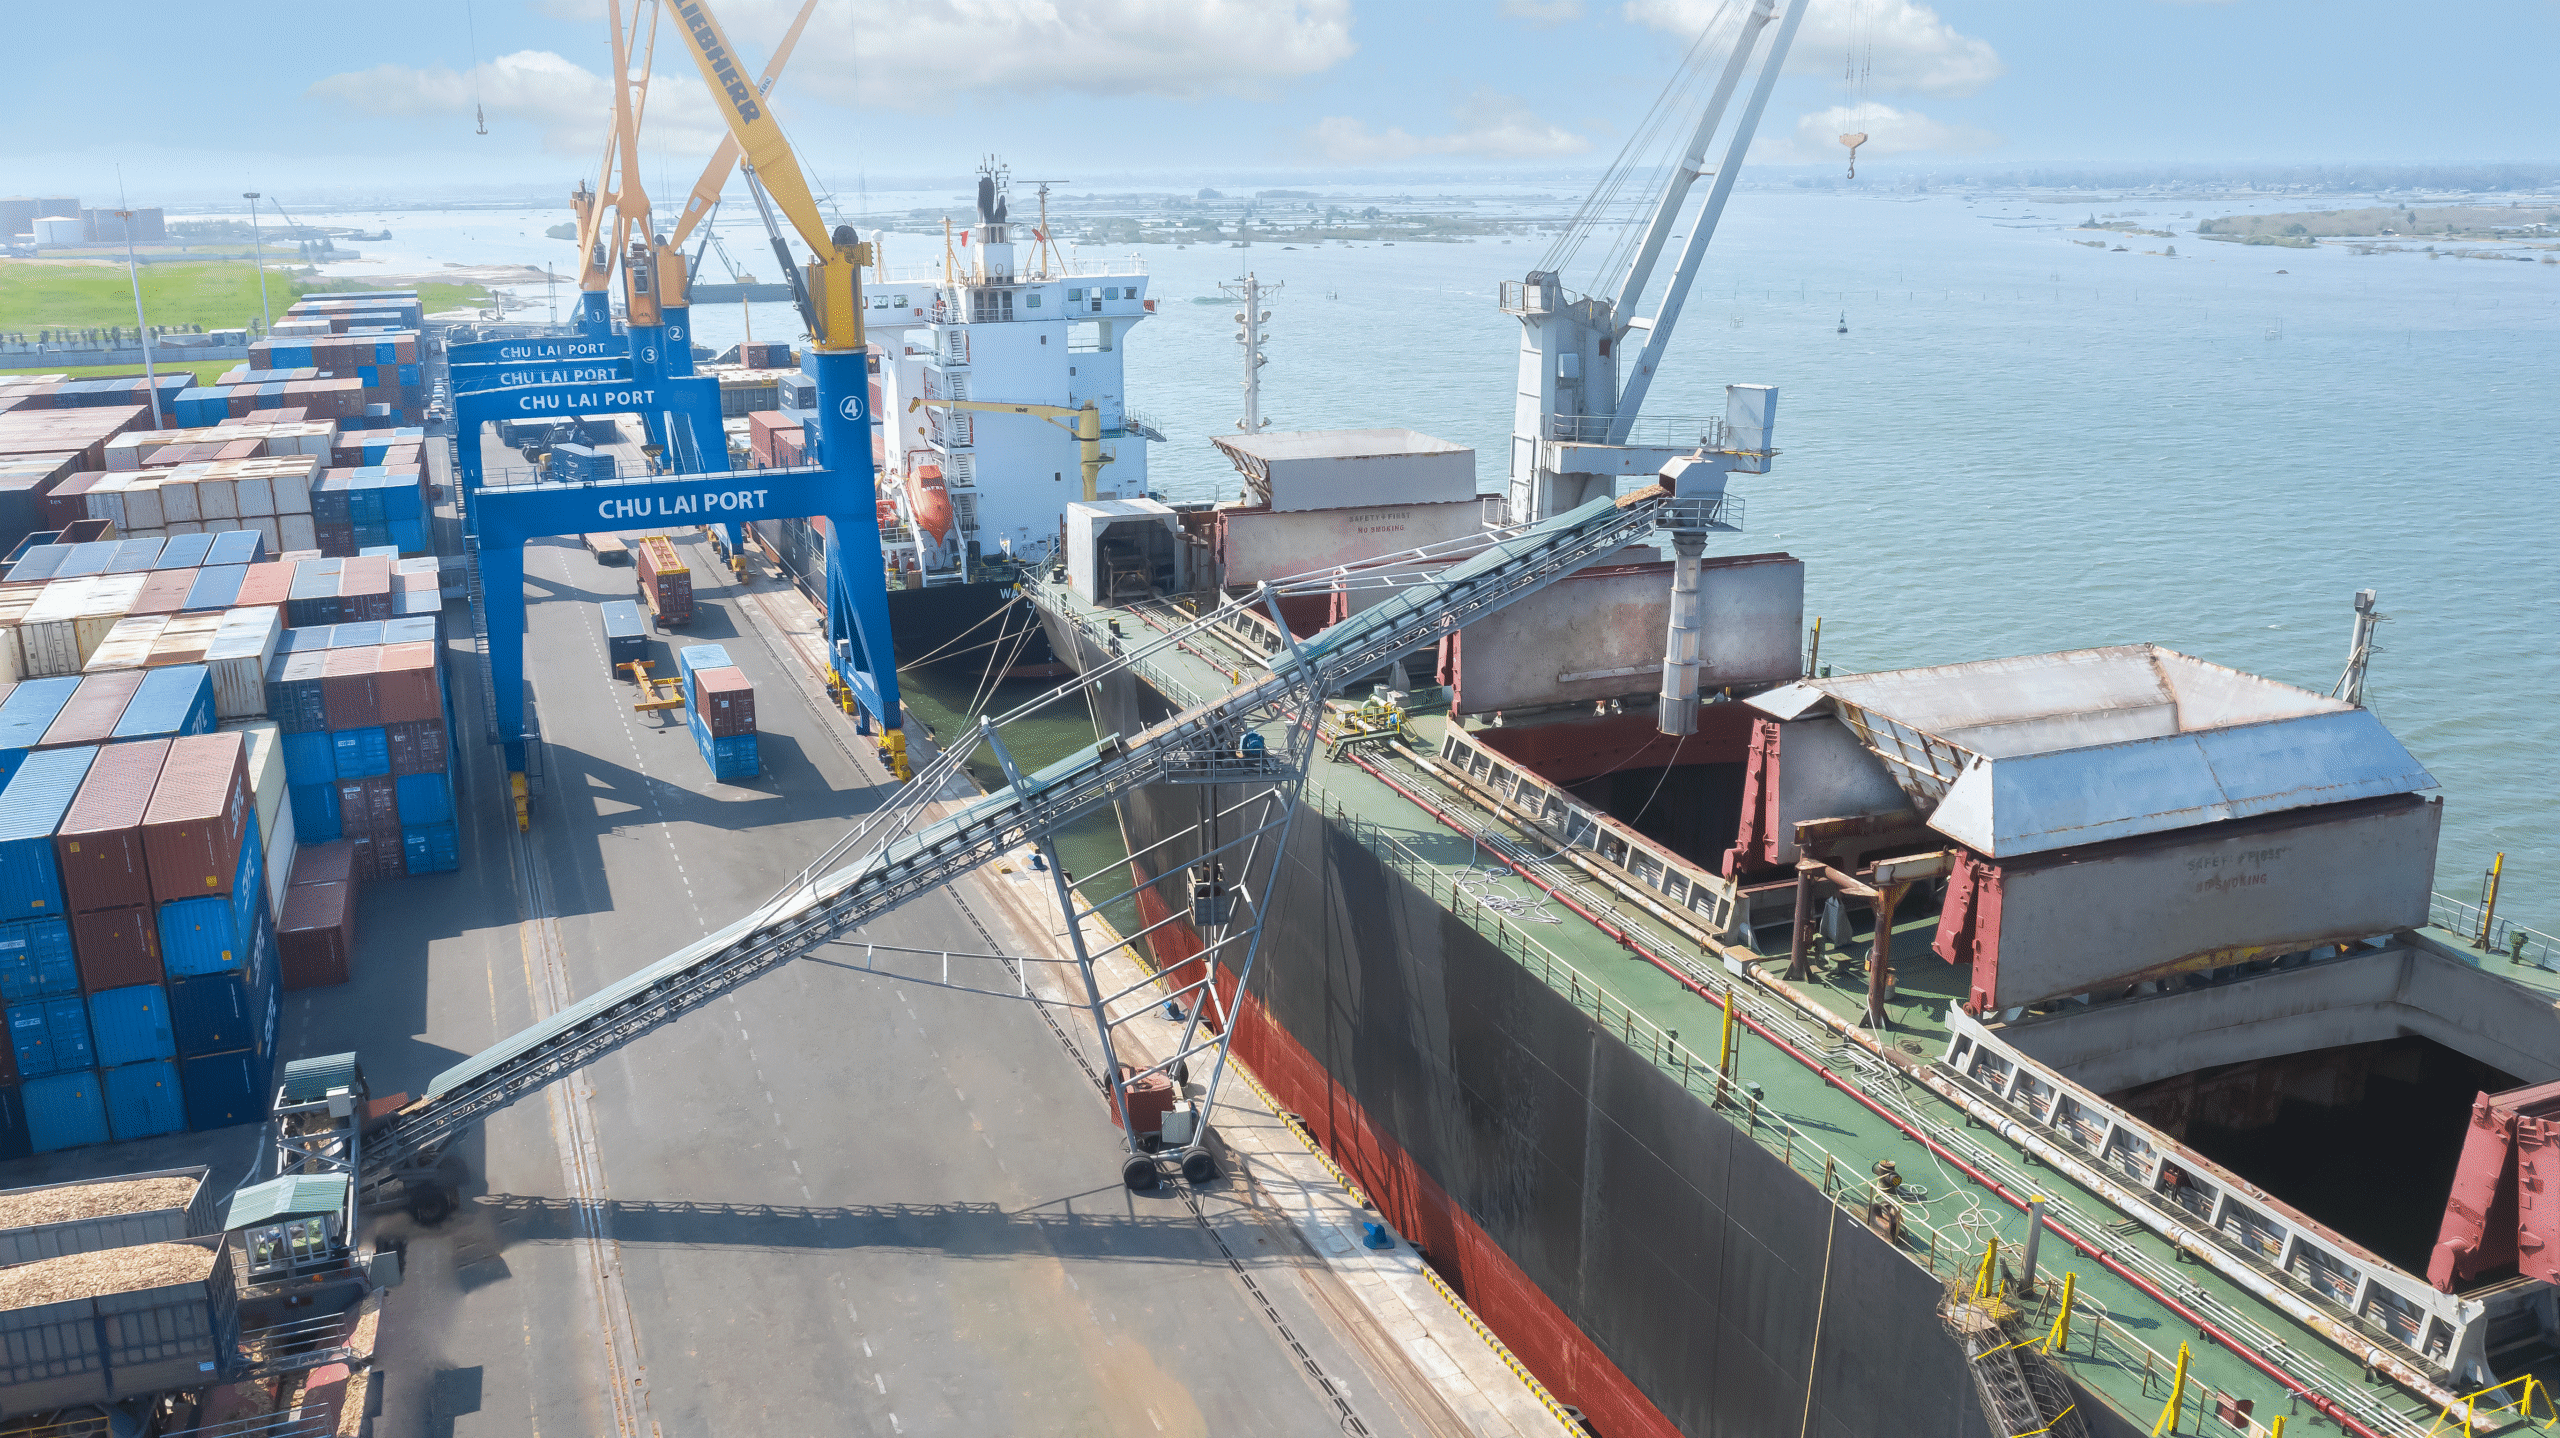 Cảng Chu Lai- Cửa ngõ xuất khẩu hàng hóa mới tại miền Trung - Ảnh 2.